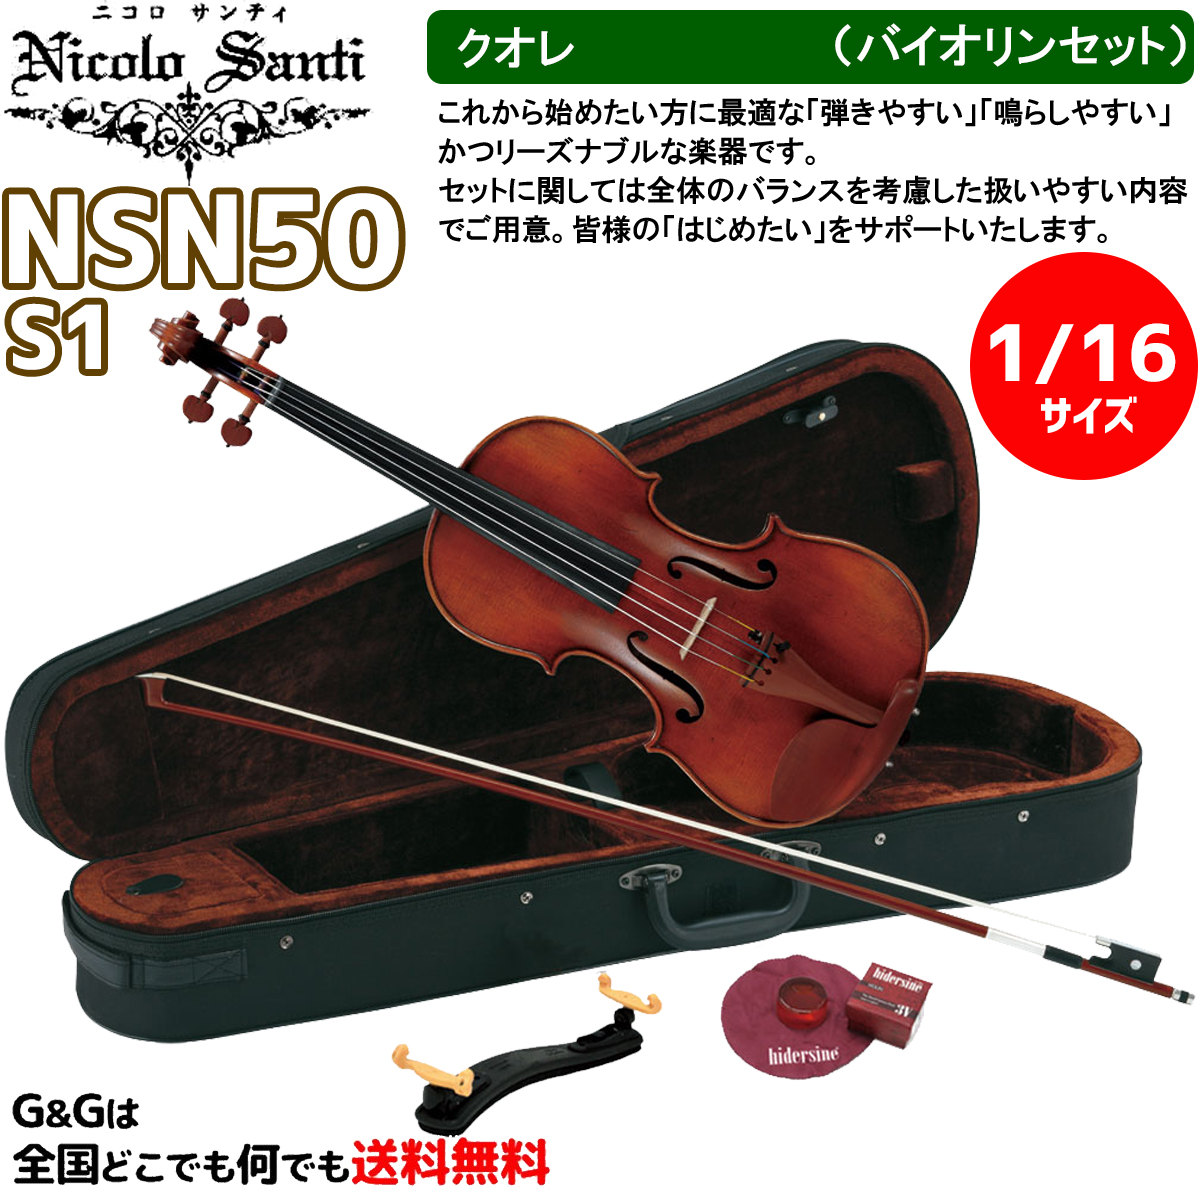 国内外の人気 バイオリンセット 1 16サイズ ニコロ サンティ クオレ